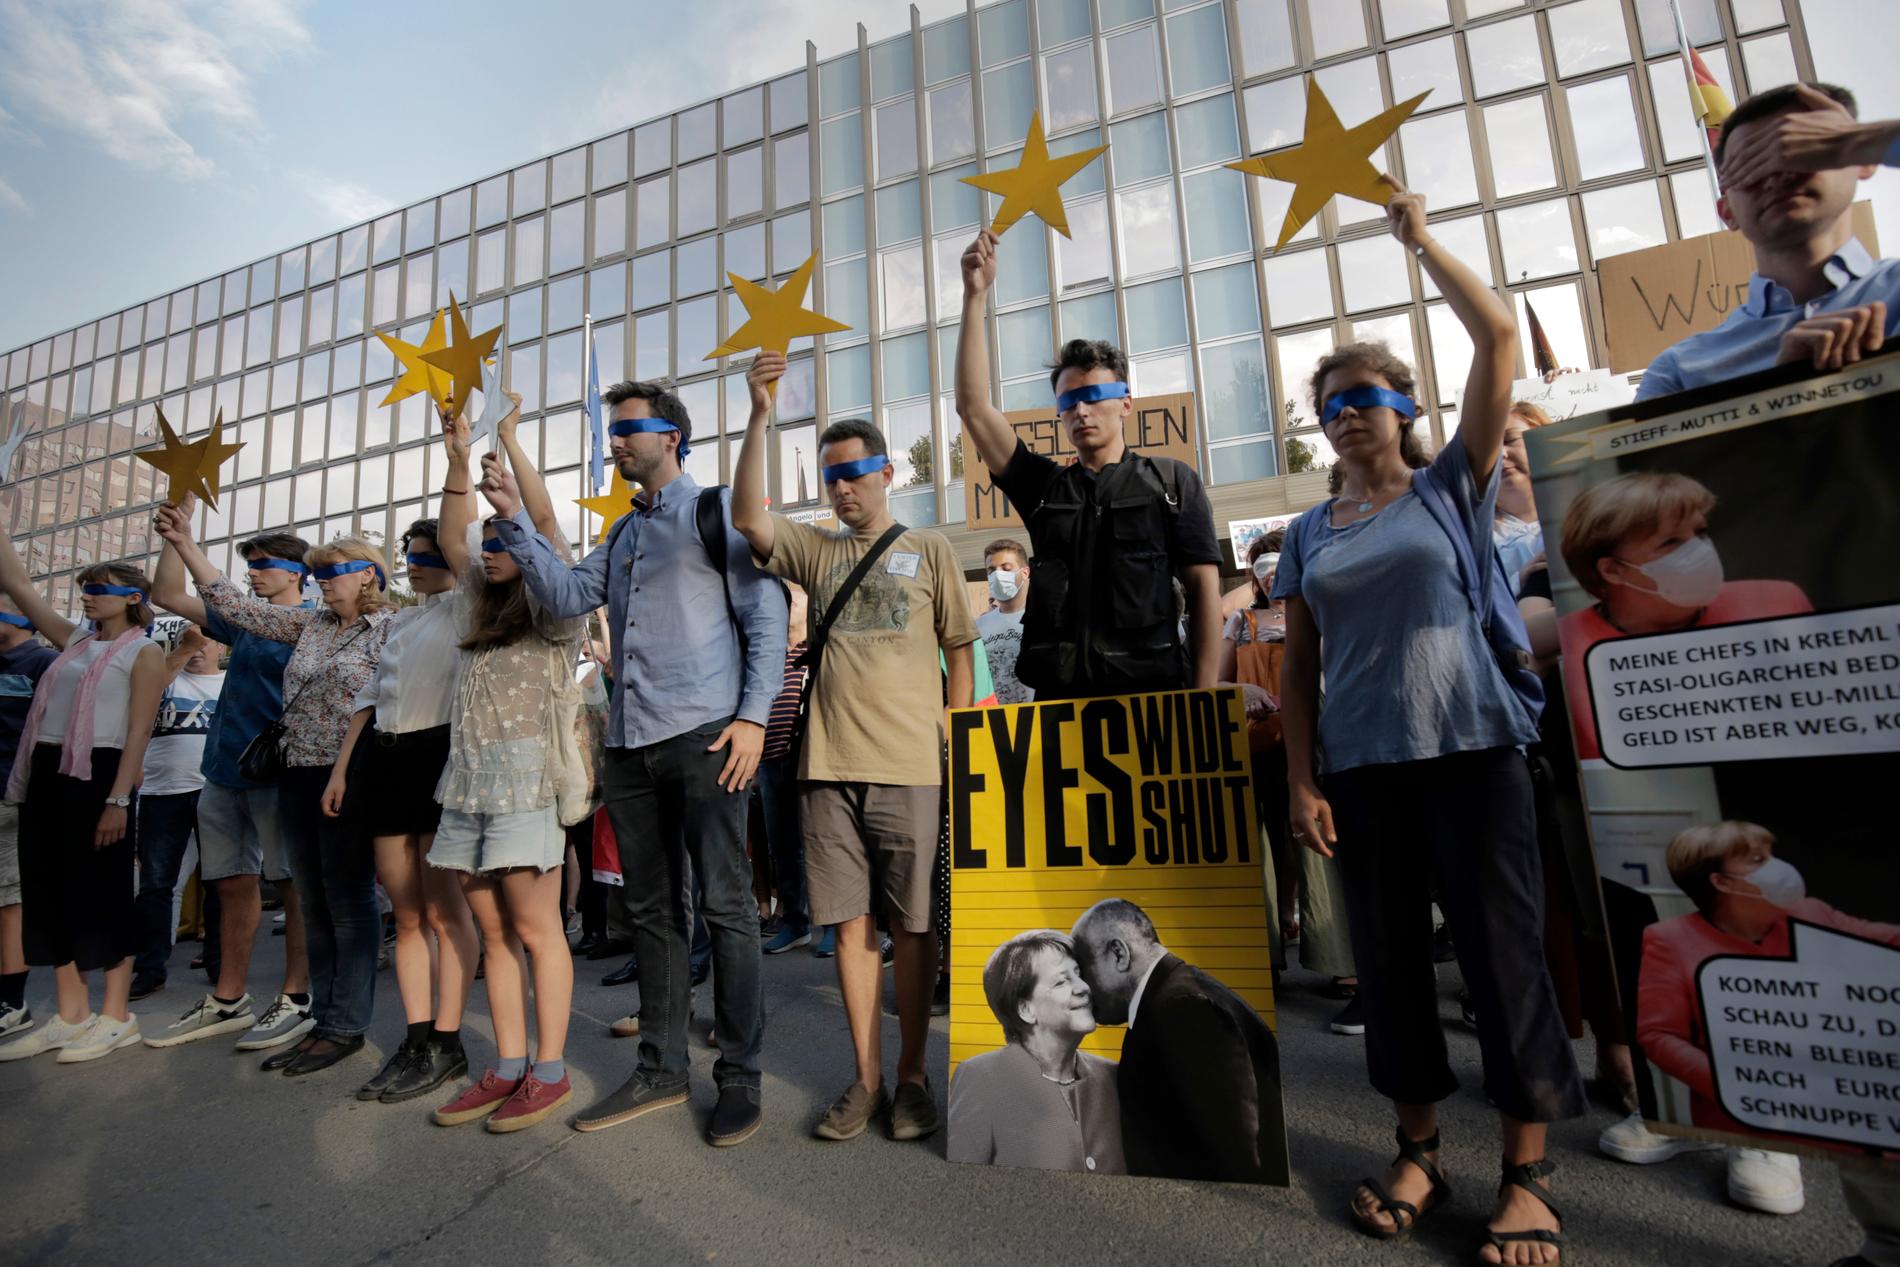 Demonstranter blundar och håller upp stjärnor som ska symbolisera EU:s medlemsstater i samband med en protest i mitten av augusti. Många av de som protesterar anser att EU har varit för tyst om den omfattande korruption i Bulgarien som de vill sätta ljuset på.